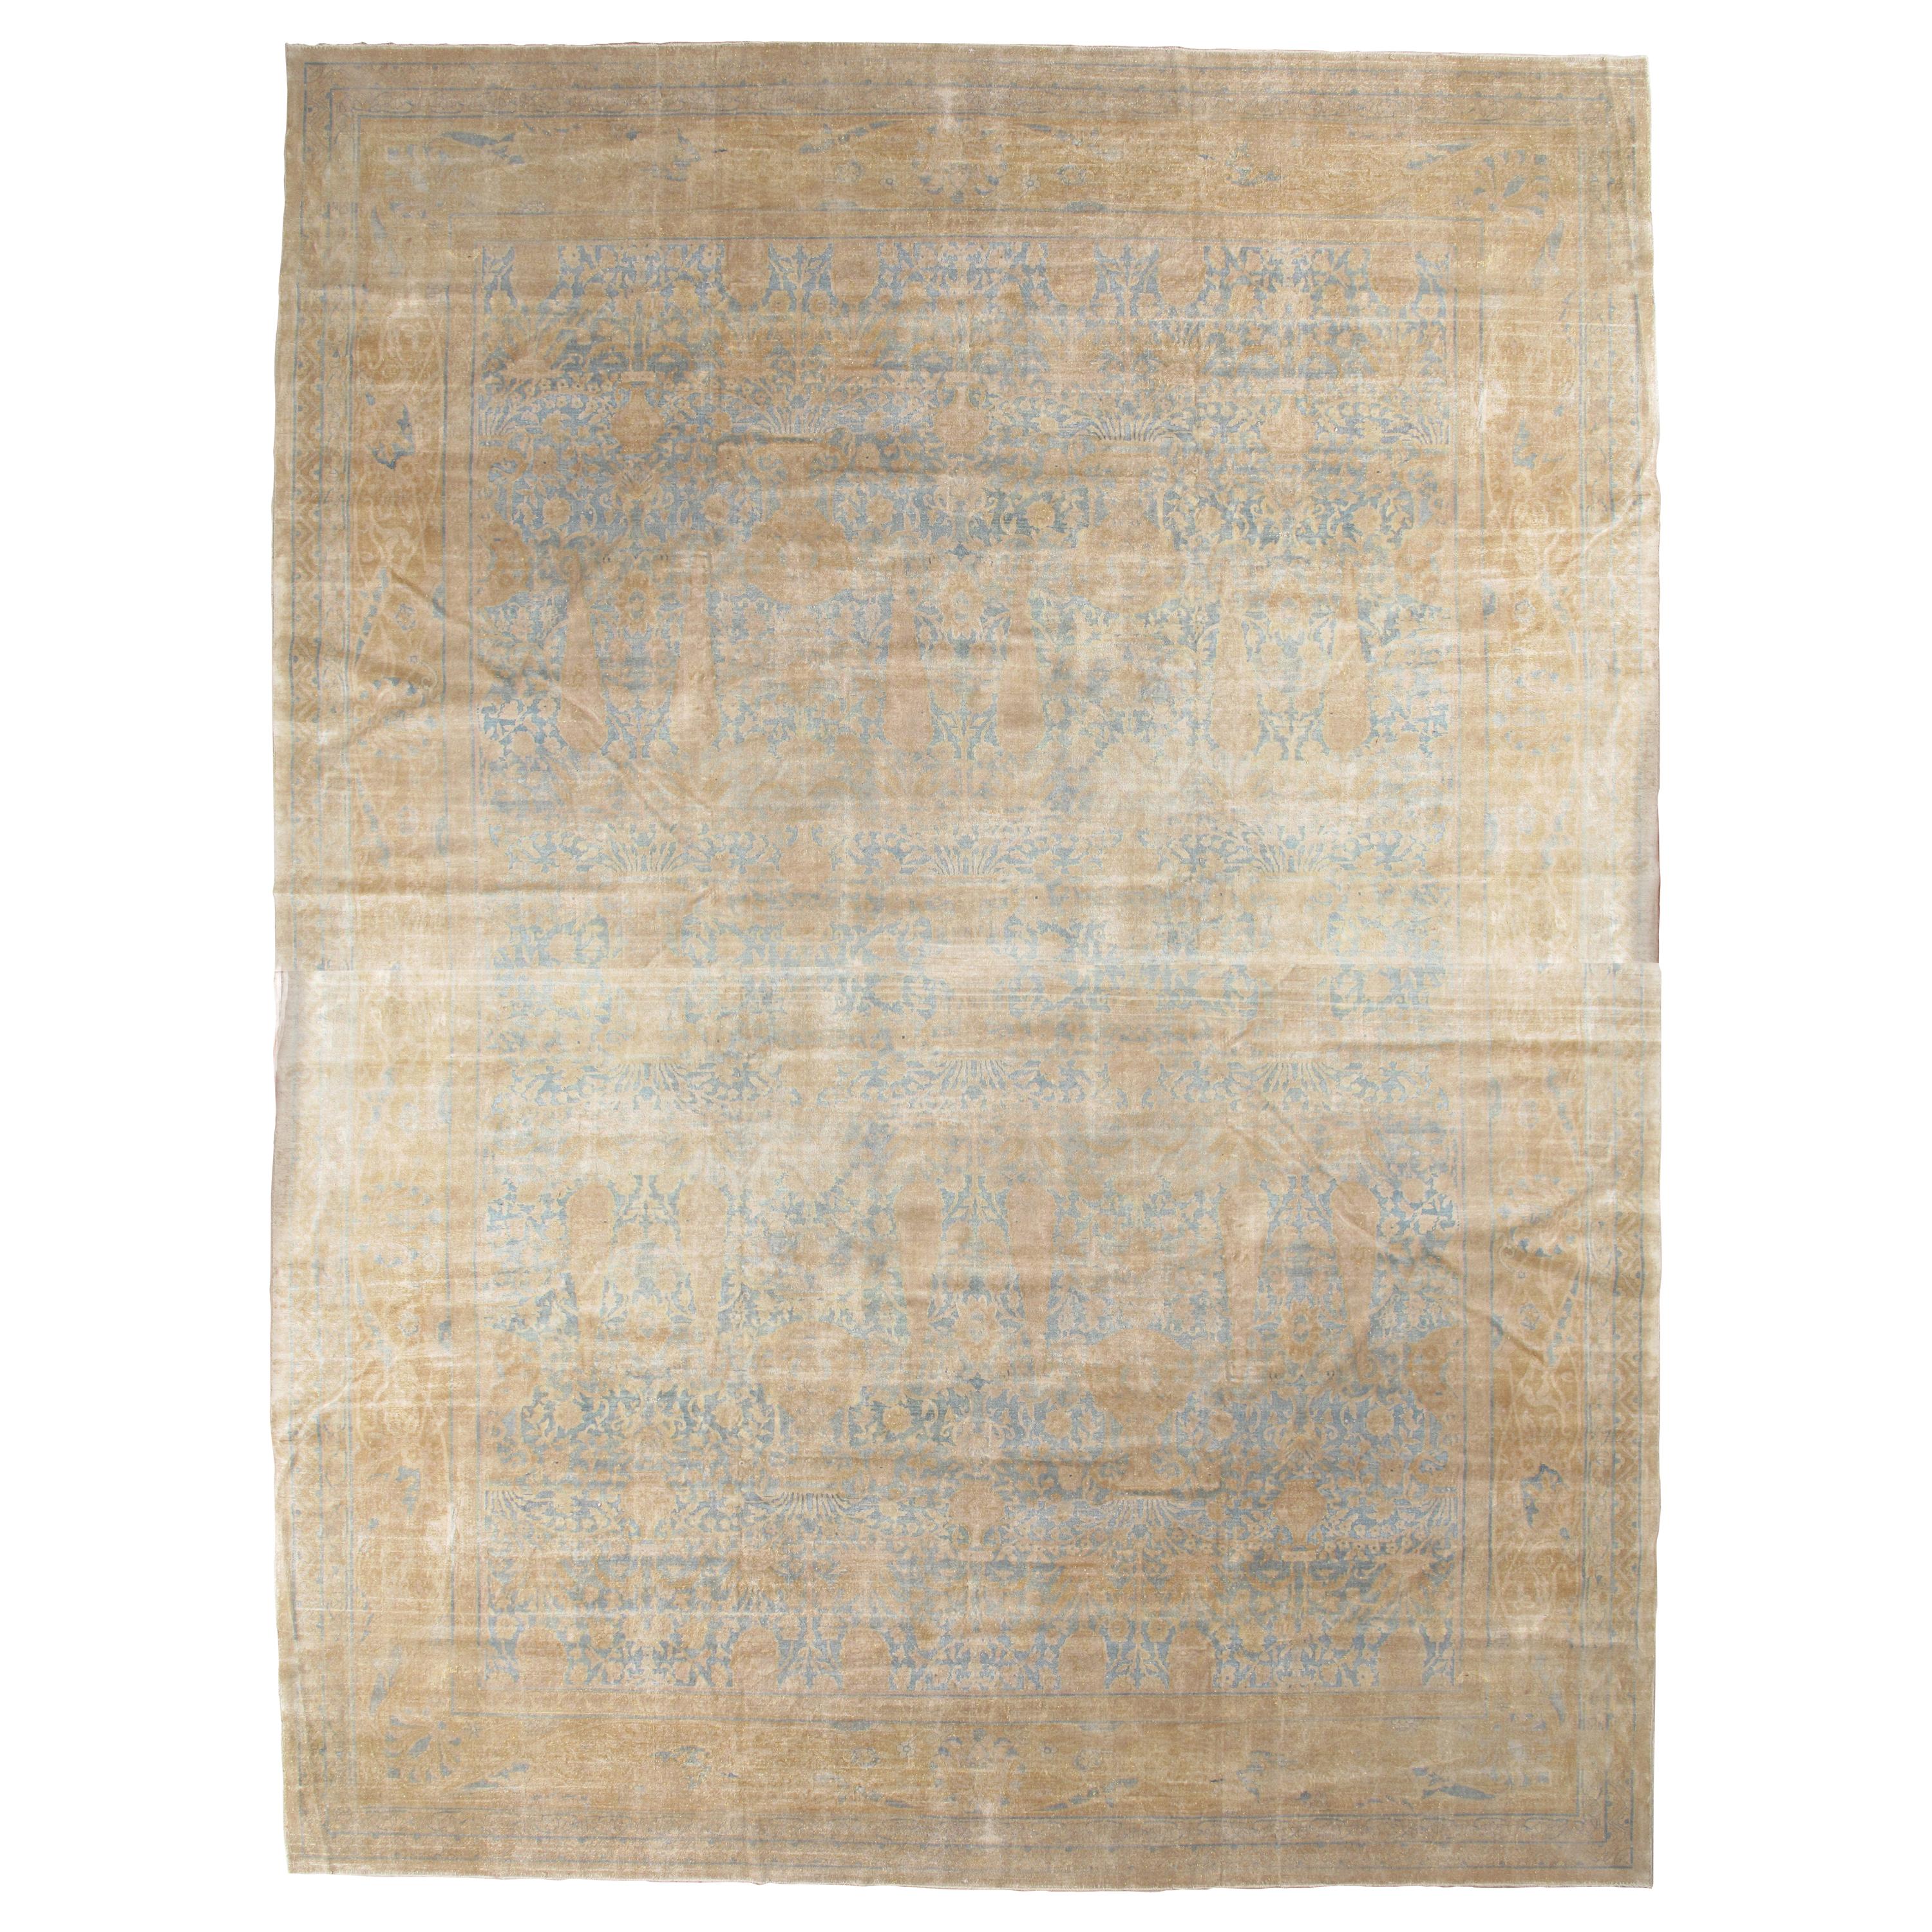 Tapis indien ancien Agra, tapis oriental fait à la main, bleu clair, or, ivoire, doux